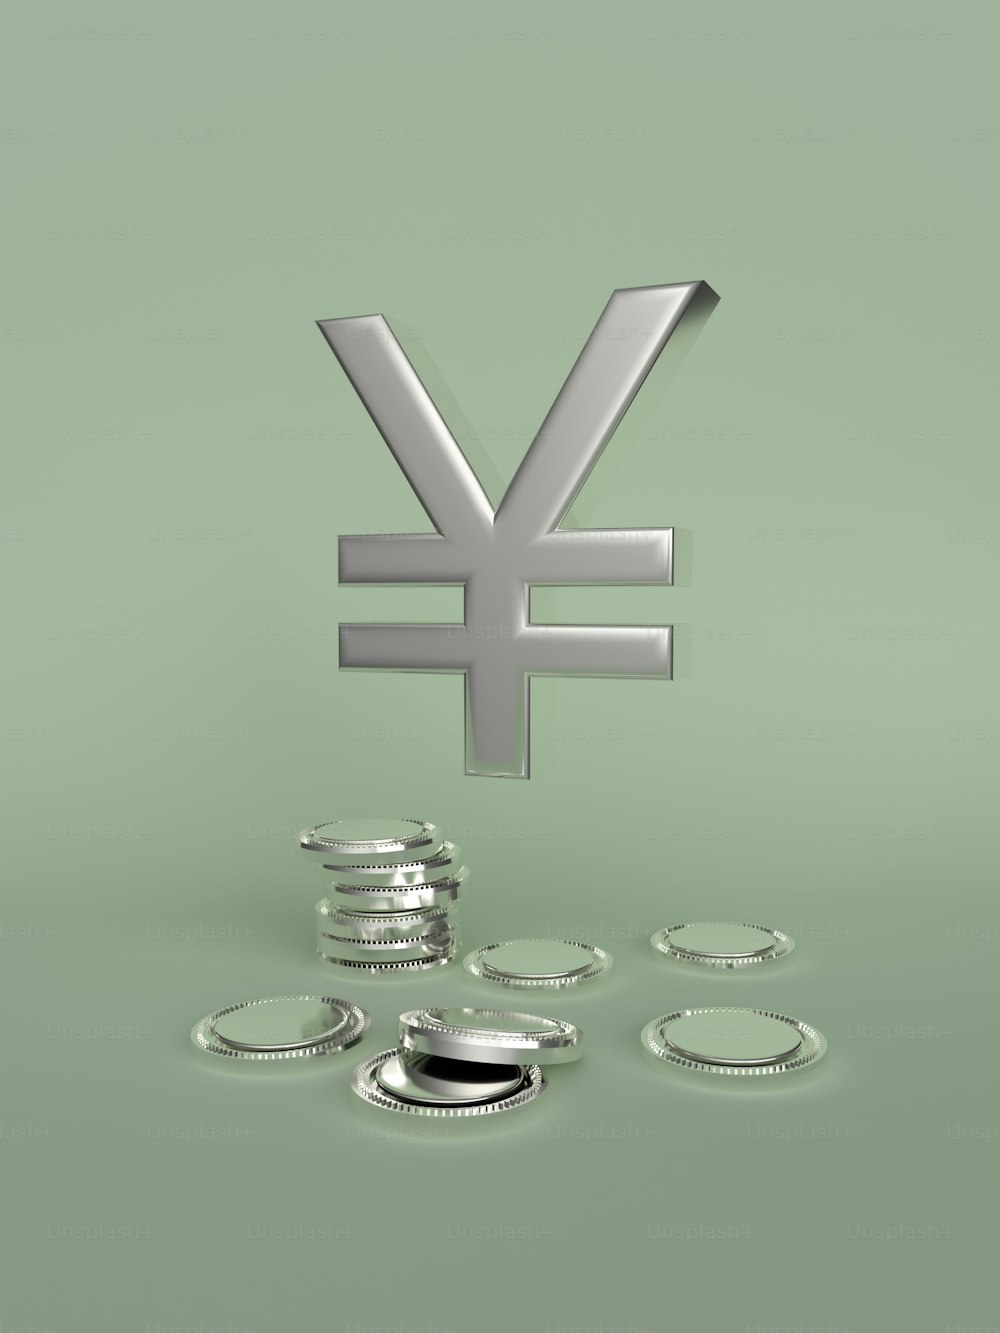 un symbole monétaire en argent assis au sommet d’une pile de pièces